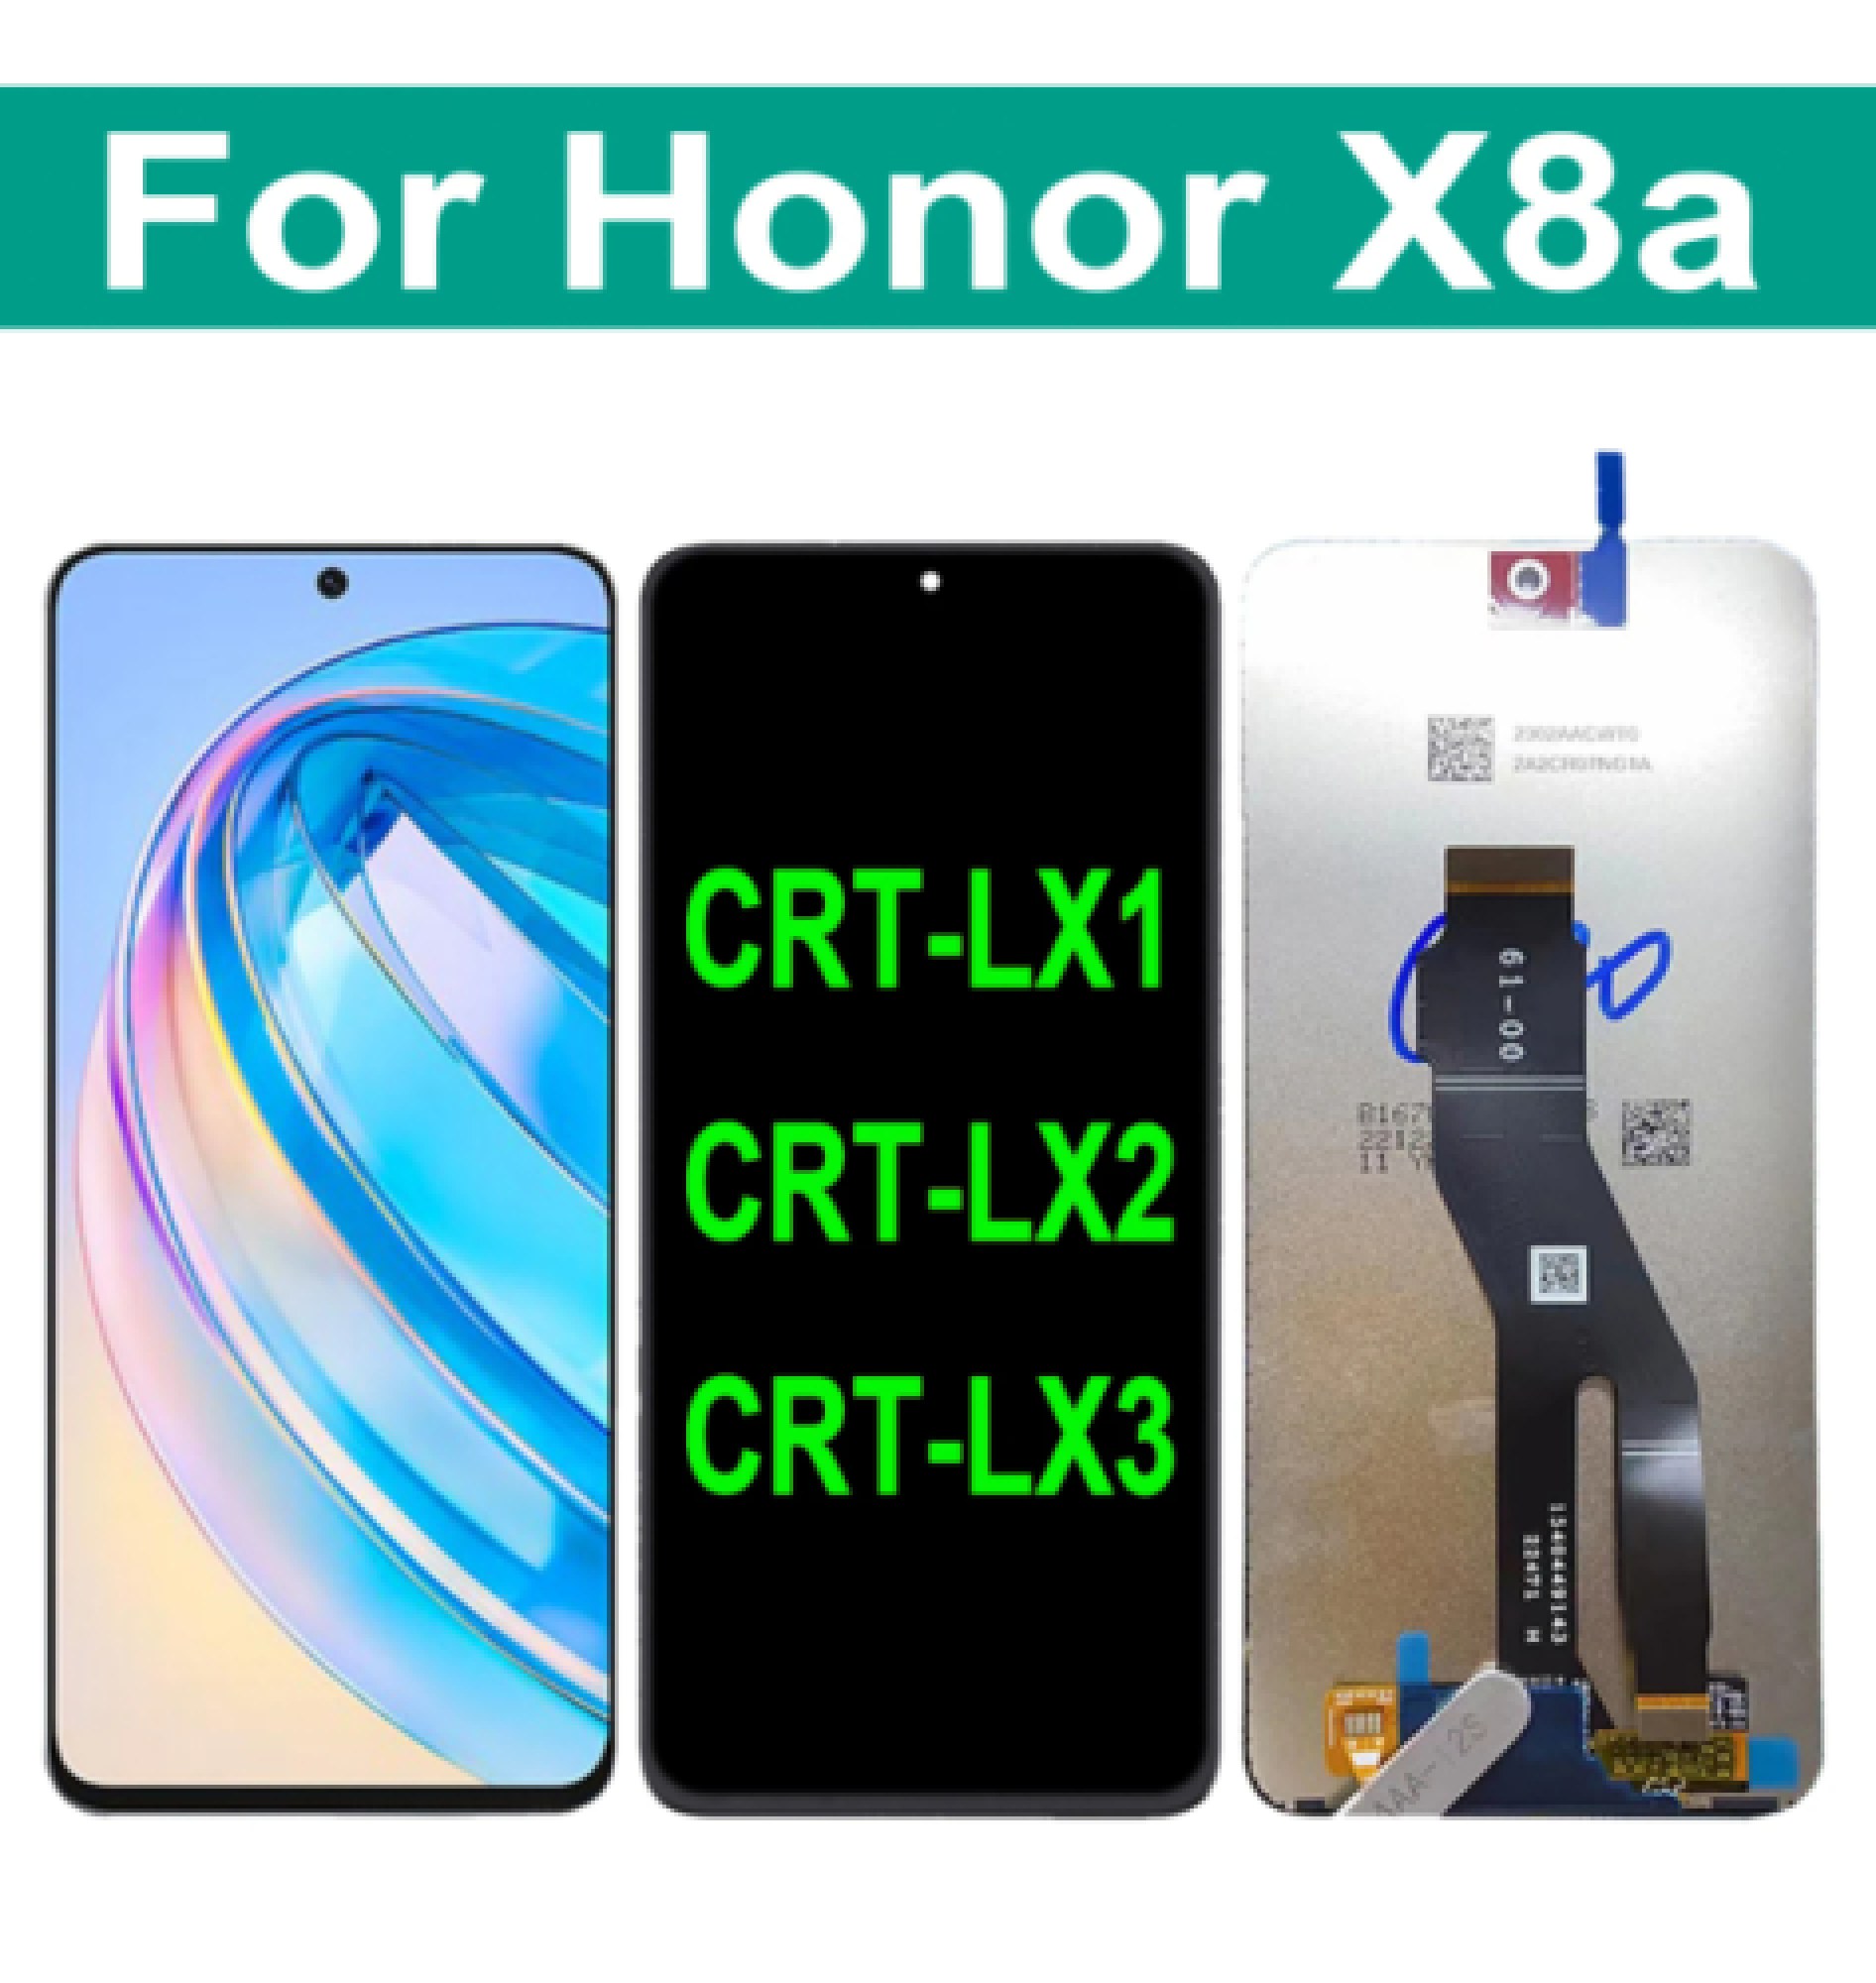 Дисплей (экран) для Honor X8a  (CRT-LX1, CRT-LX2, CRT-LX3) Original 100% c тачскрином, черный - фото